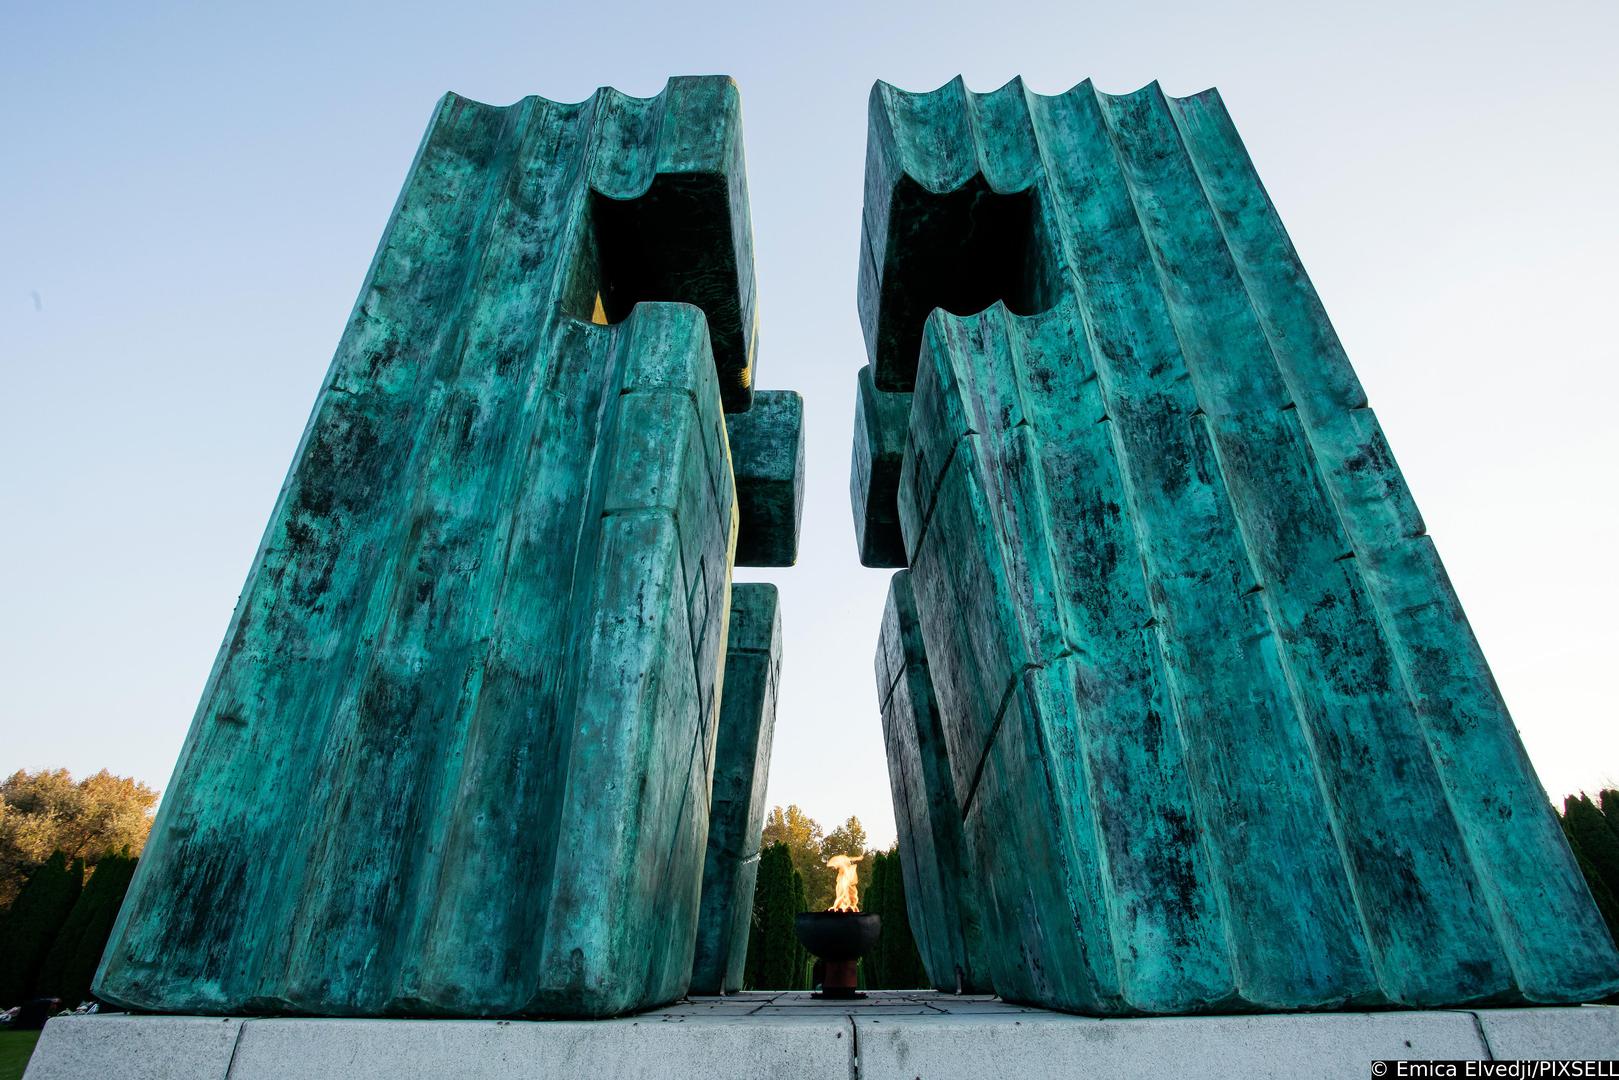 28.10.2021., Vukovar -  Memorijalno groblje zrtava iz Domovinskog rata u Vukovaru.
Na mjestu masovne grobnice na groblju je ekshumirano 938 tijela i na tomu je mjestu postavljen isti broj bijelih mramornih krizeva koji predstavljaju broj zrtava. U sredisnjem dijelu groblja 5. kolovoza 2000. godine postavljen je spomenik ciji je autor Djurdja Ostoja. Spomenik je izradjen od patinirane bronce, visok je cetiri metra, a u sredini je zracni kriz i vjecni plamen. Najmladja zrtva Domovinskog rata imala je svega sest mjeseci, a najstarija 104 godine.